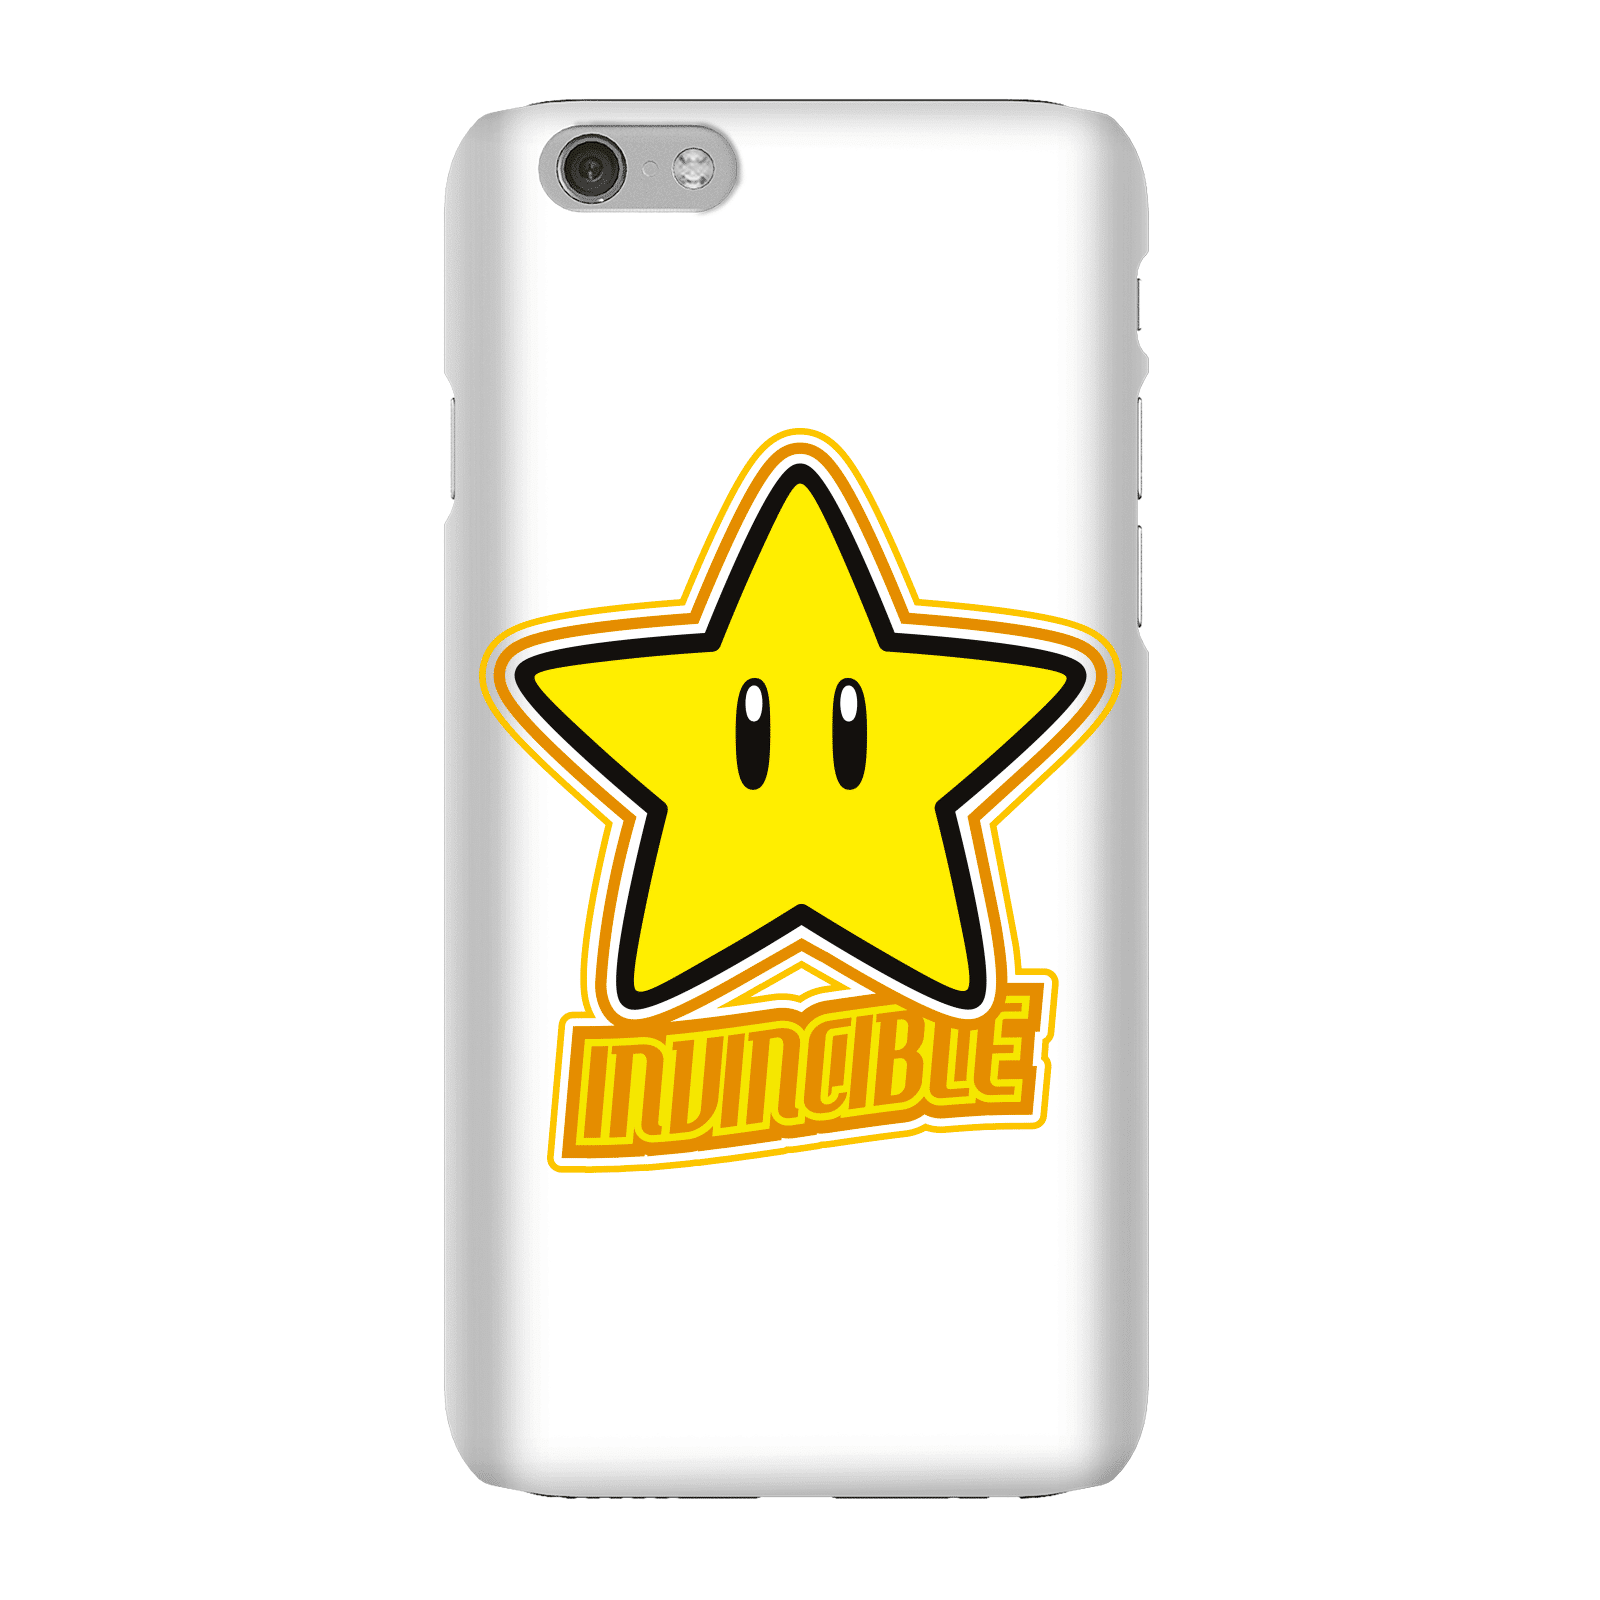 Nintendo Super Mario Invincible Phone Case - iPhone 6 - Snap Case - Gloss